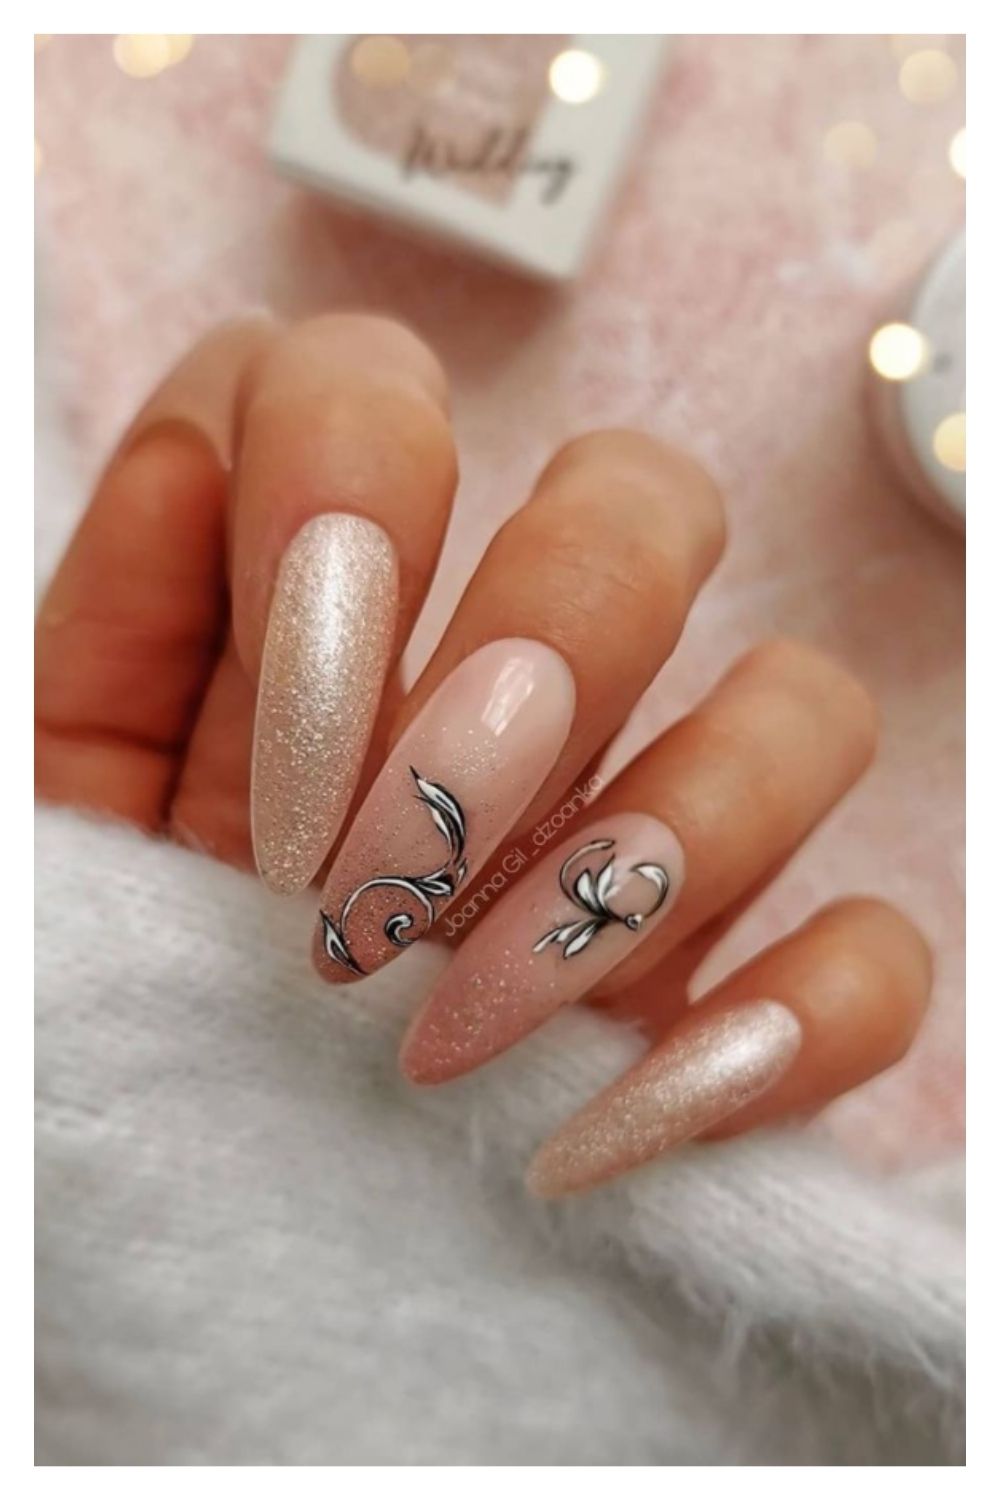 Glitter almond nails